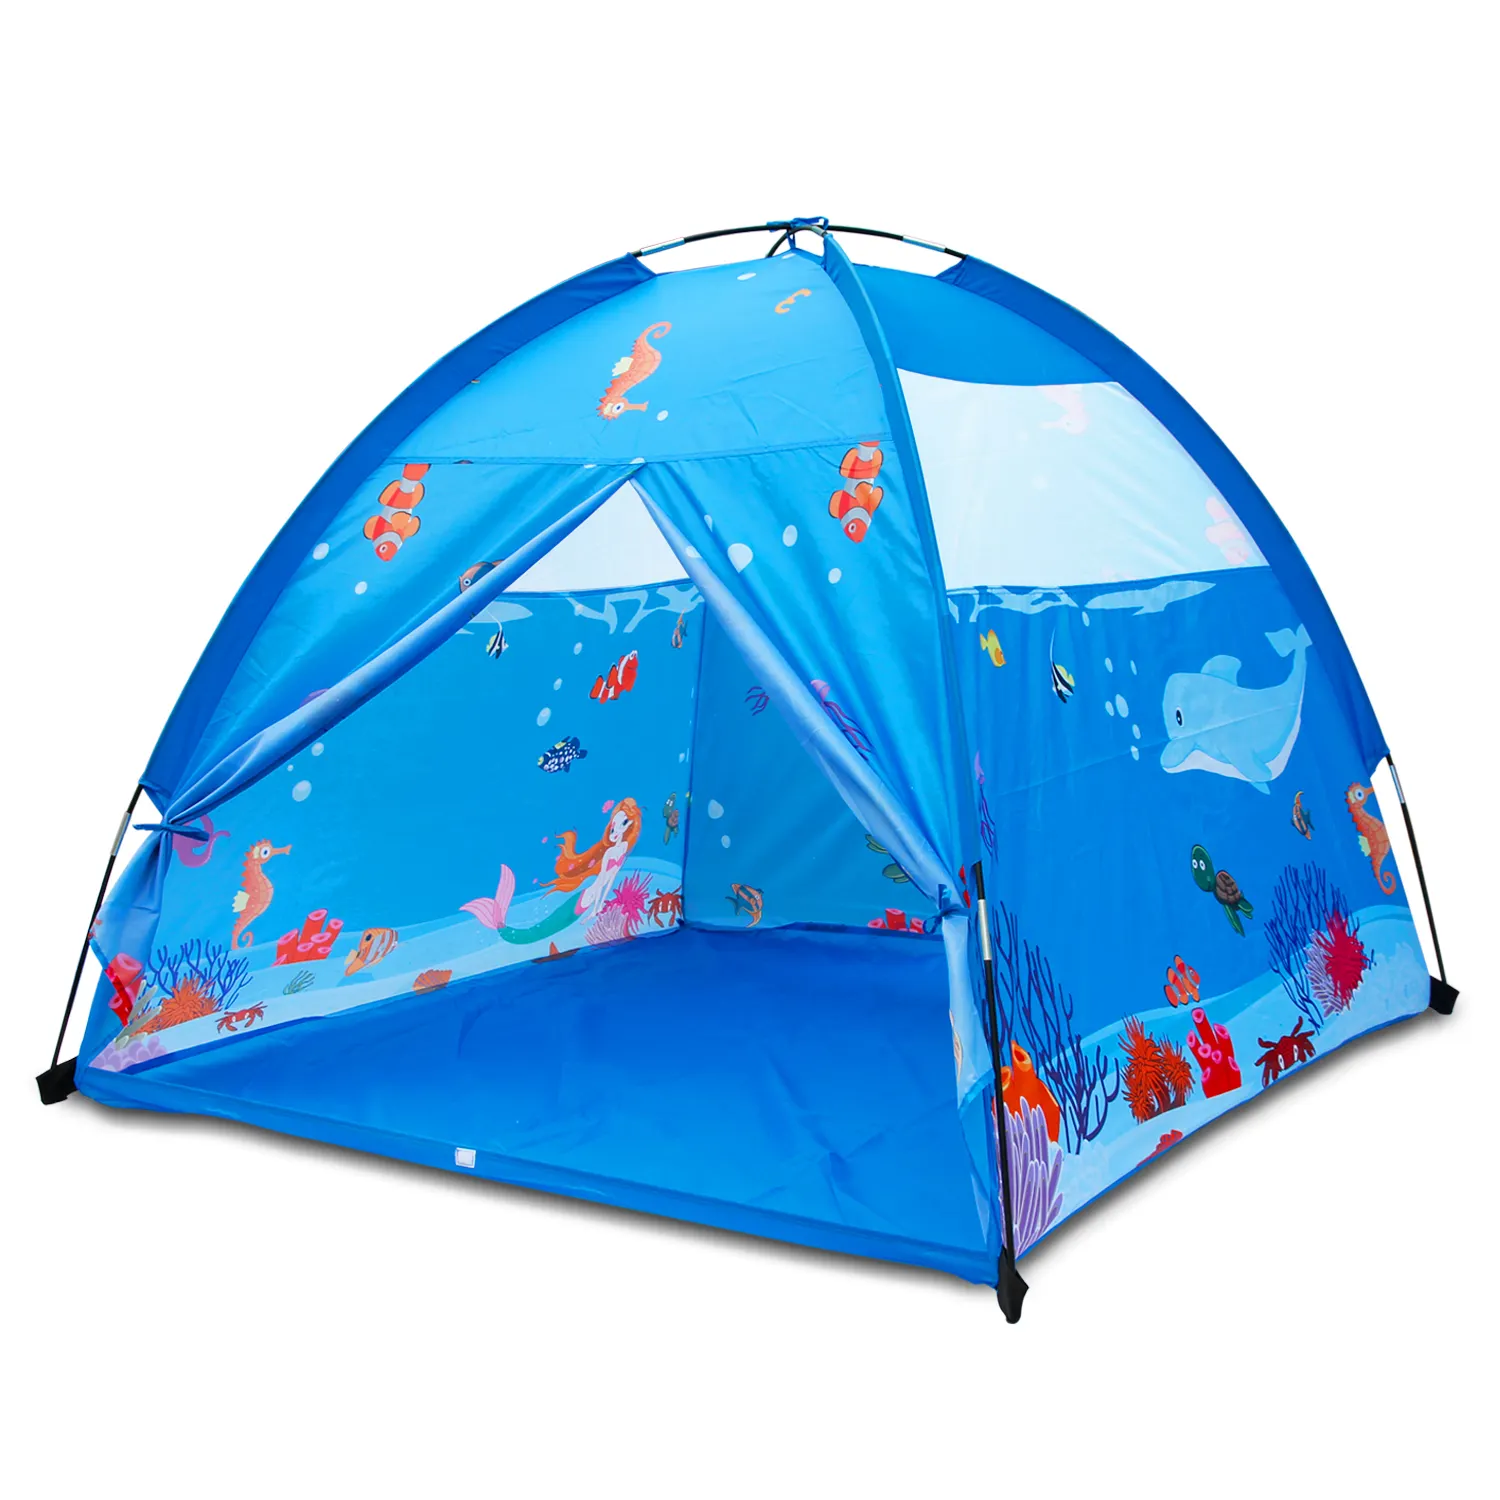 Play tenda para crianças estilo dome 150x150cm, brinquedo para crianças, área interna, oceano, mundo do mar, brinquedo para meninos e meninas